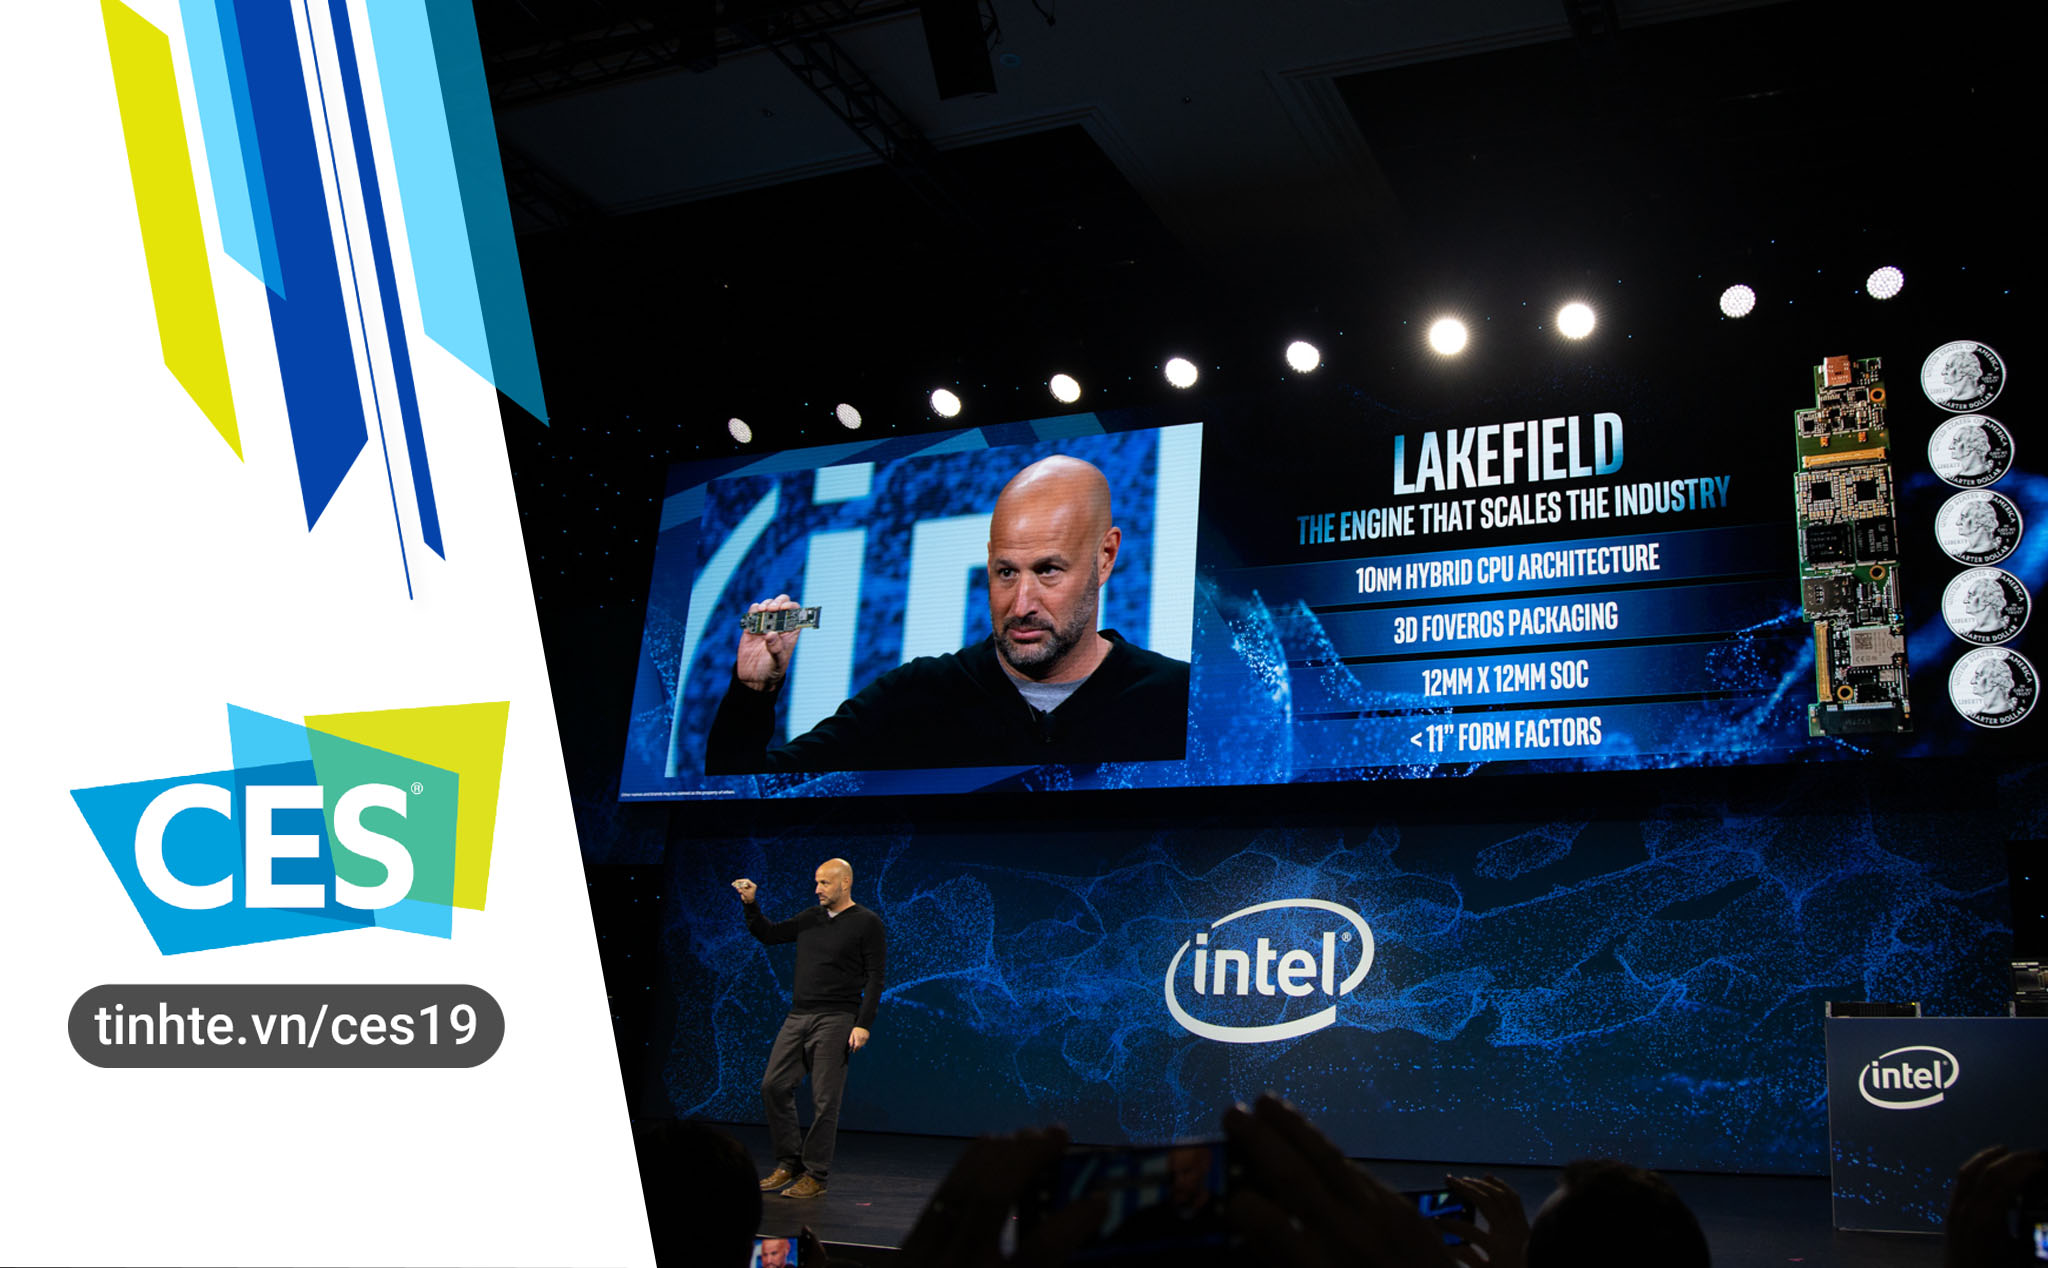 #CES19: Với Intel Lakefield, công nghệ 3D stacking sẽ thay đổi thị trường công nghệ như thế nào?